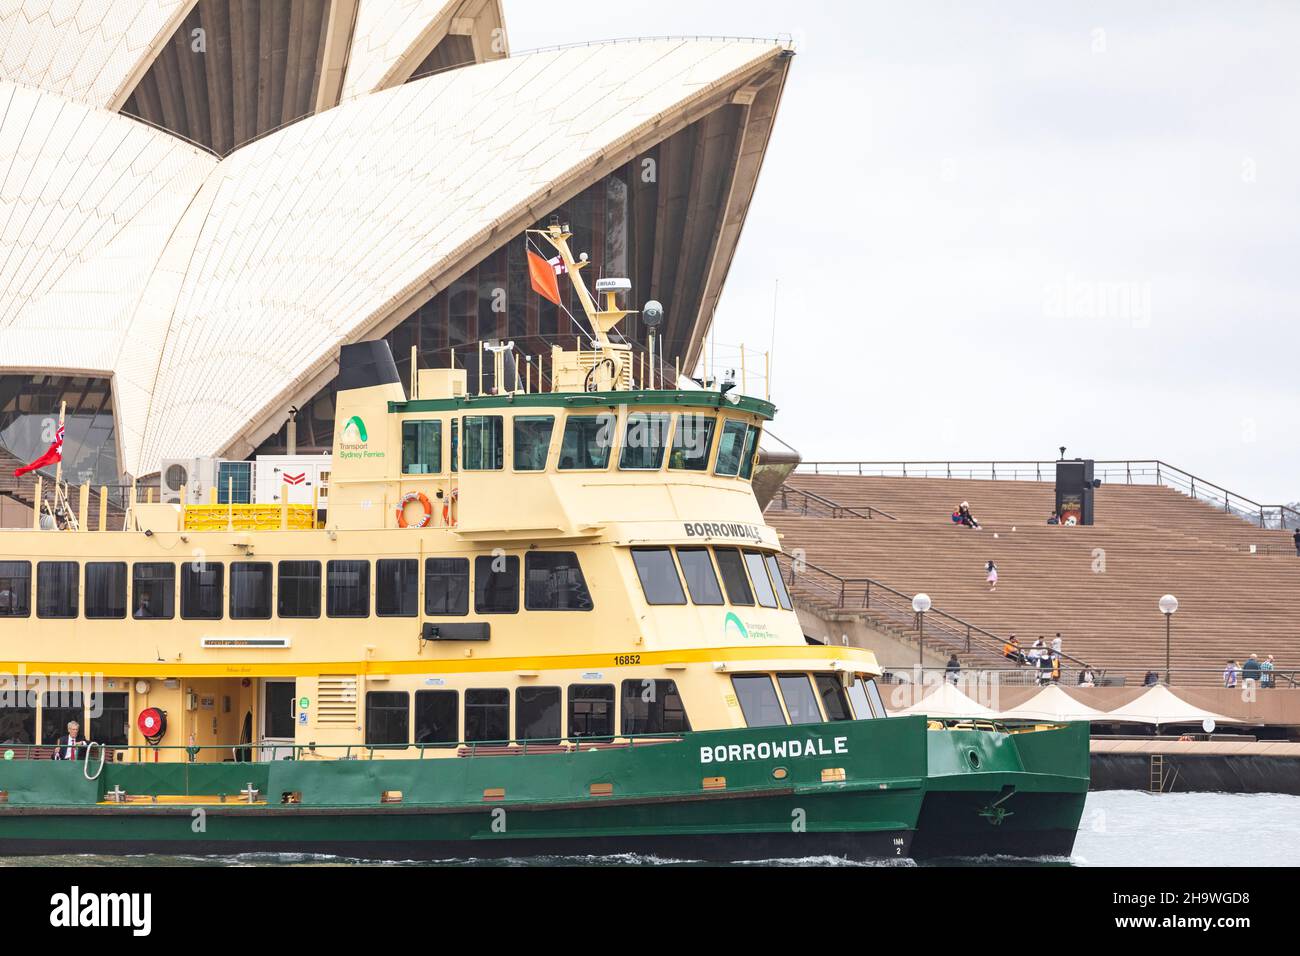 Traghetto per Sydney MV borrowdale, traghetto per il porto pubblico, passa davanti al teatro dell'opera di Sydney, NSW, Australia Foto Stock